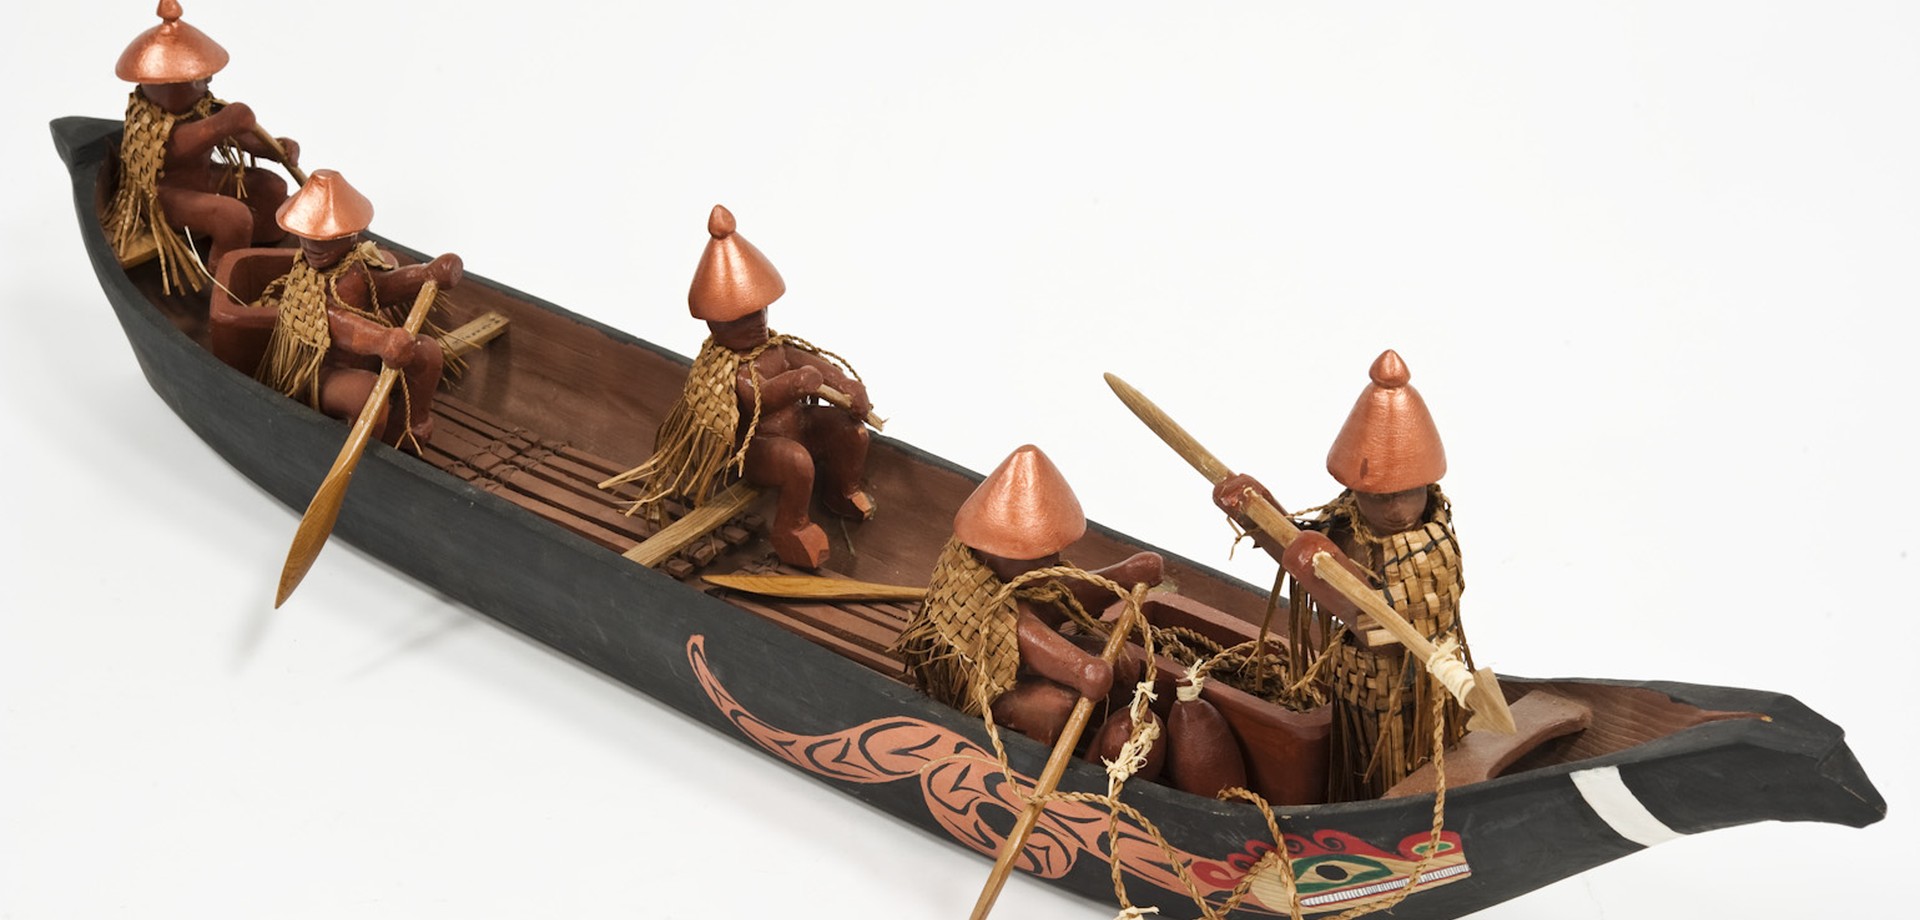 86 Zentimerter großes Modell eines Kanu mit fünf darin befindlichen Menschenfiguren.